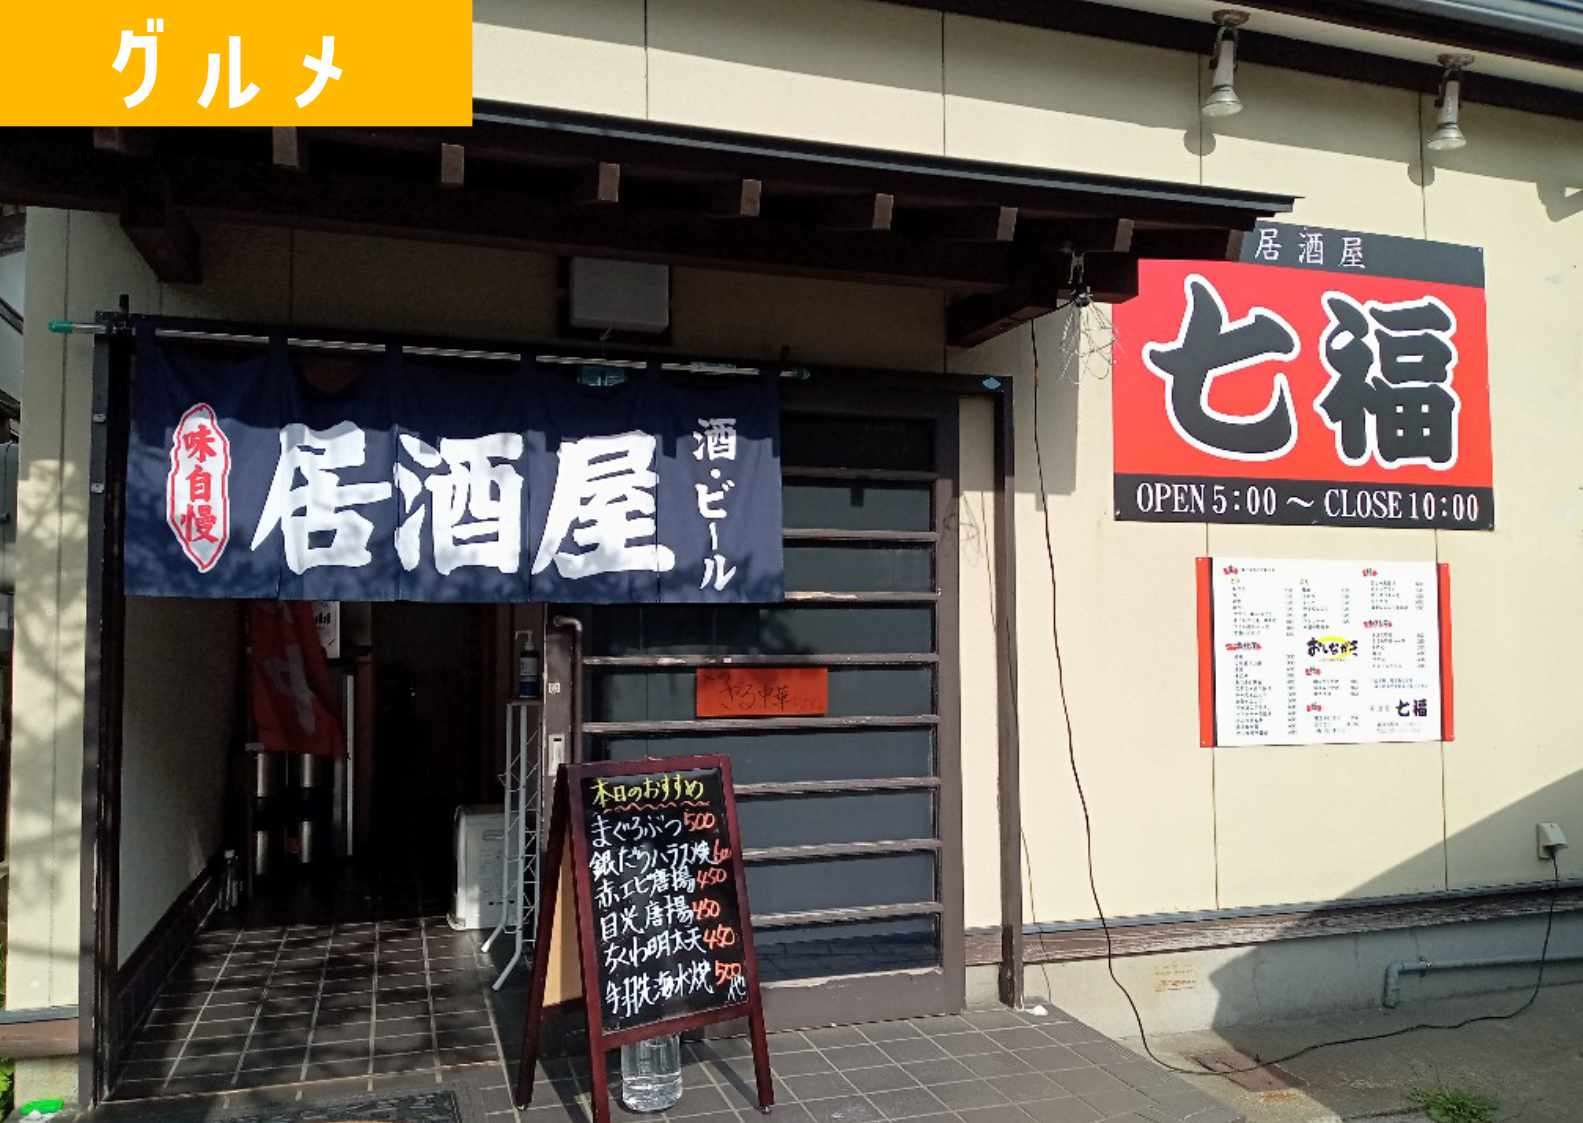 酒田駅裏に 居酒屋 七福 ってお店がオープンしてた 3 28開店 ショーナイツウ